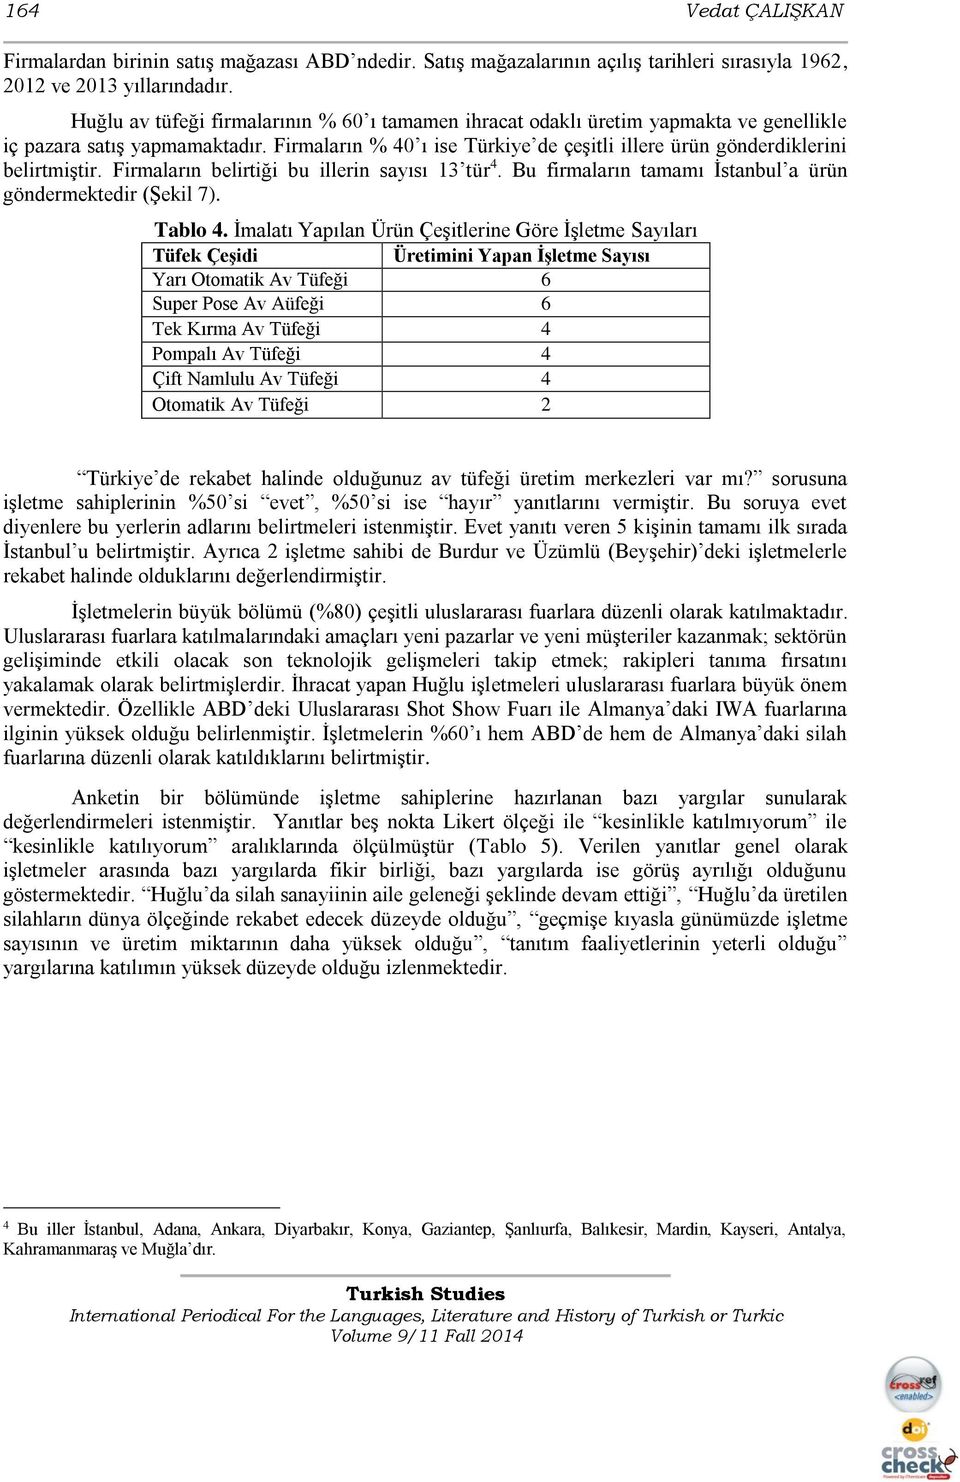 Firmaların % 40 ı ise Türkiye de çeşitli illere ürün gönderdiklerini belirtmiştir. Firmaların belirtiği bu illerin sayısı 13 tür 4. Bu firmaların tamamı İstanbul a ürün göndermektedir (Şekil 7).